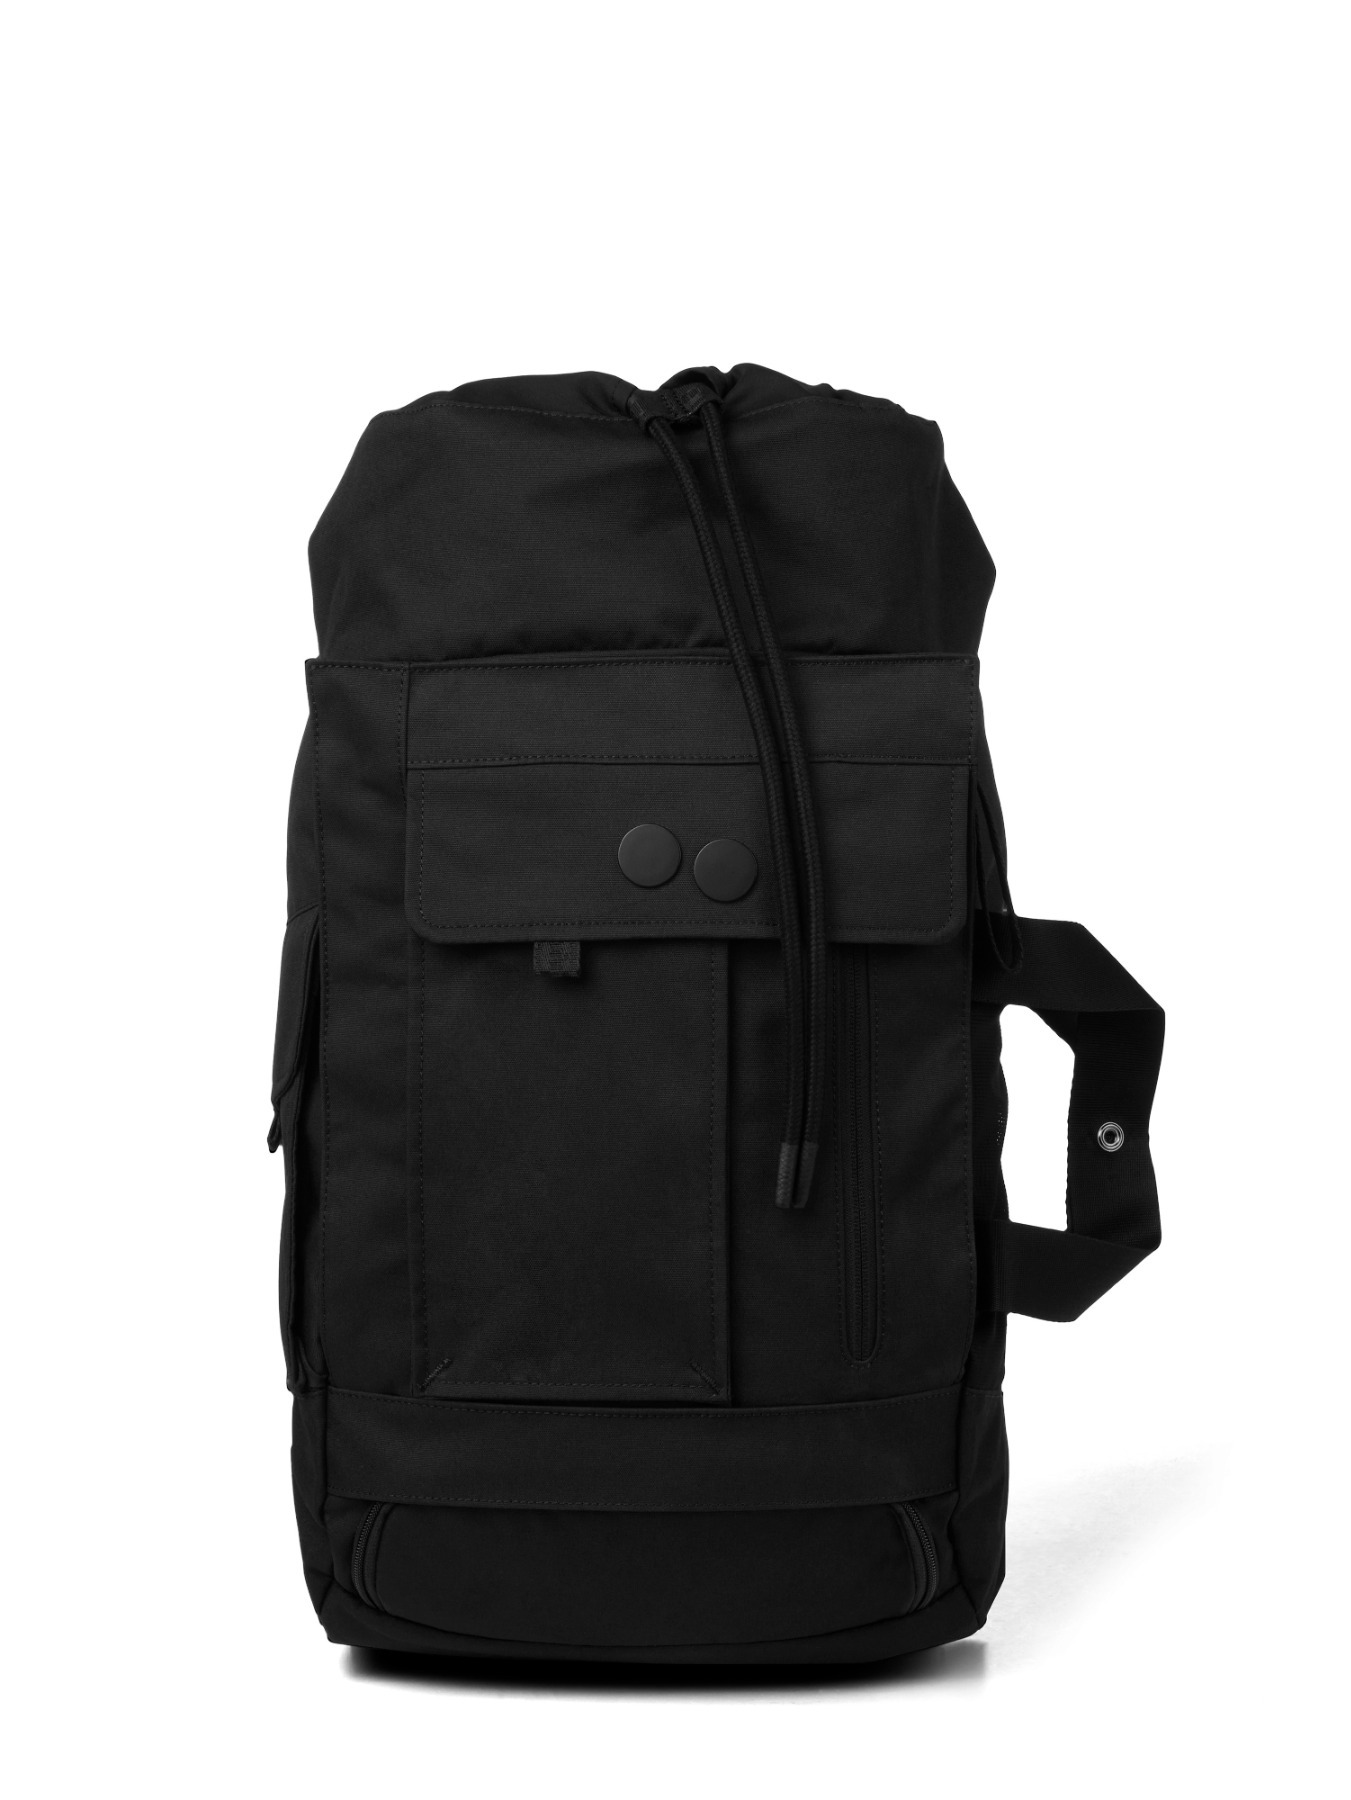 pinqponq Backpack BLOK medium - Construct Black